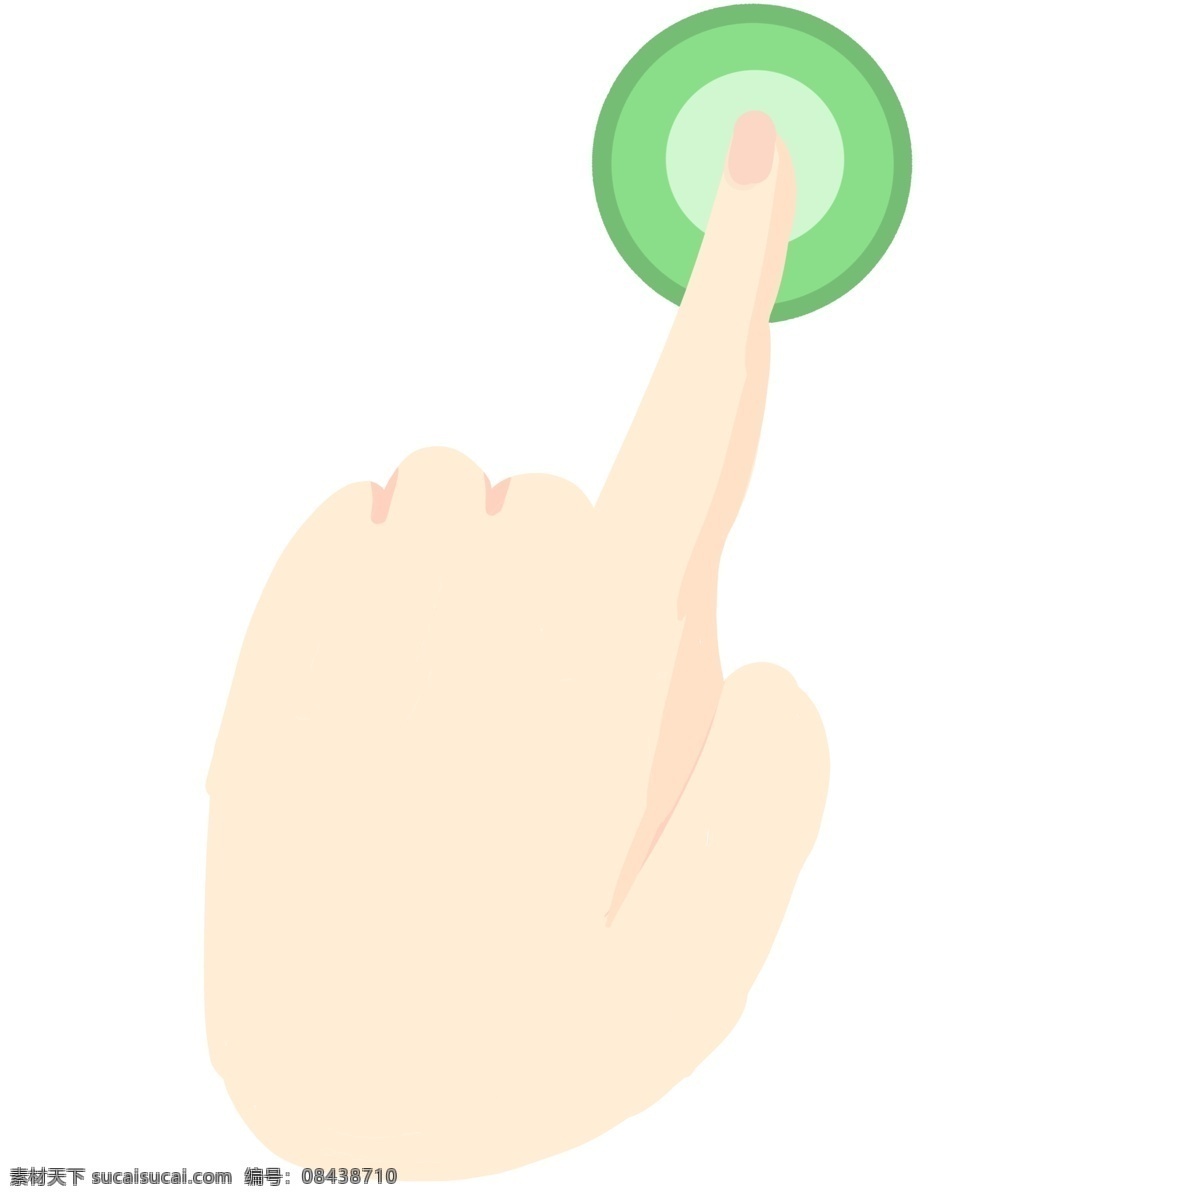 食指 按钮 手势 插画 绿色按钮 电按钮手势 按按钮手势 手指插画 按钮手势插图 左手